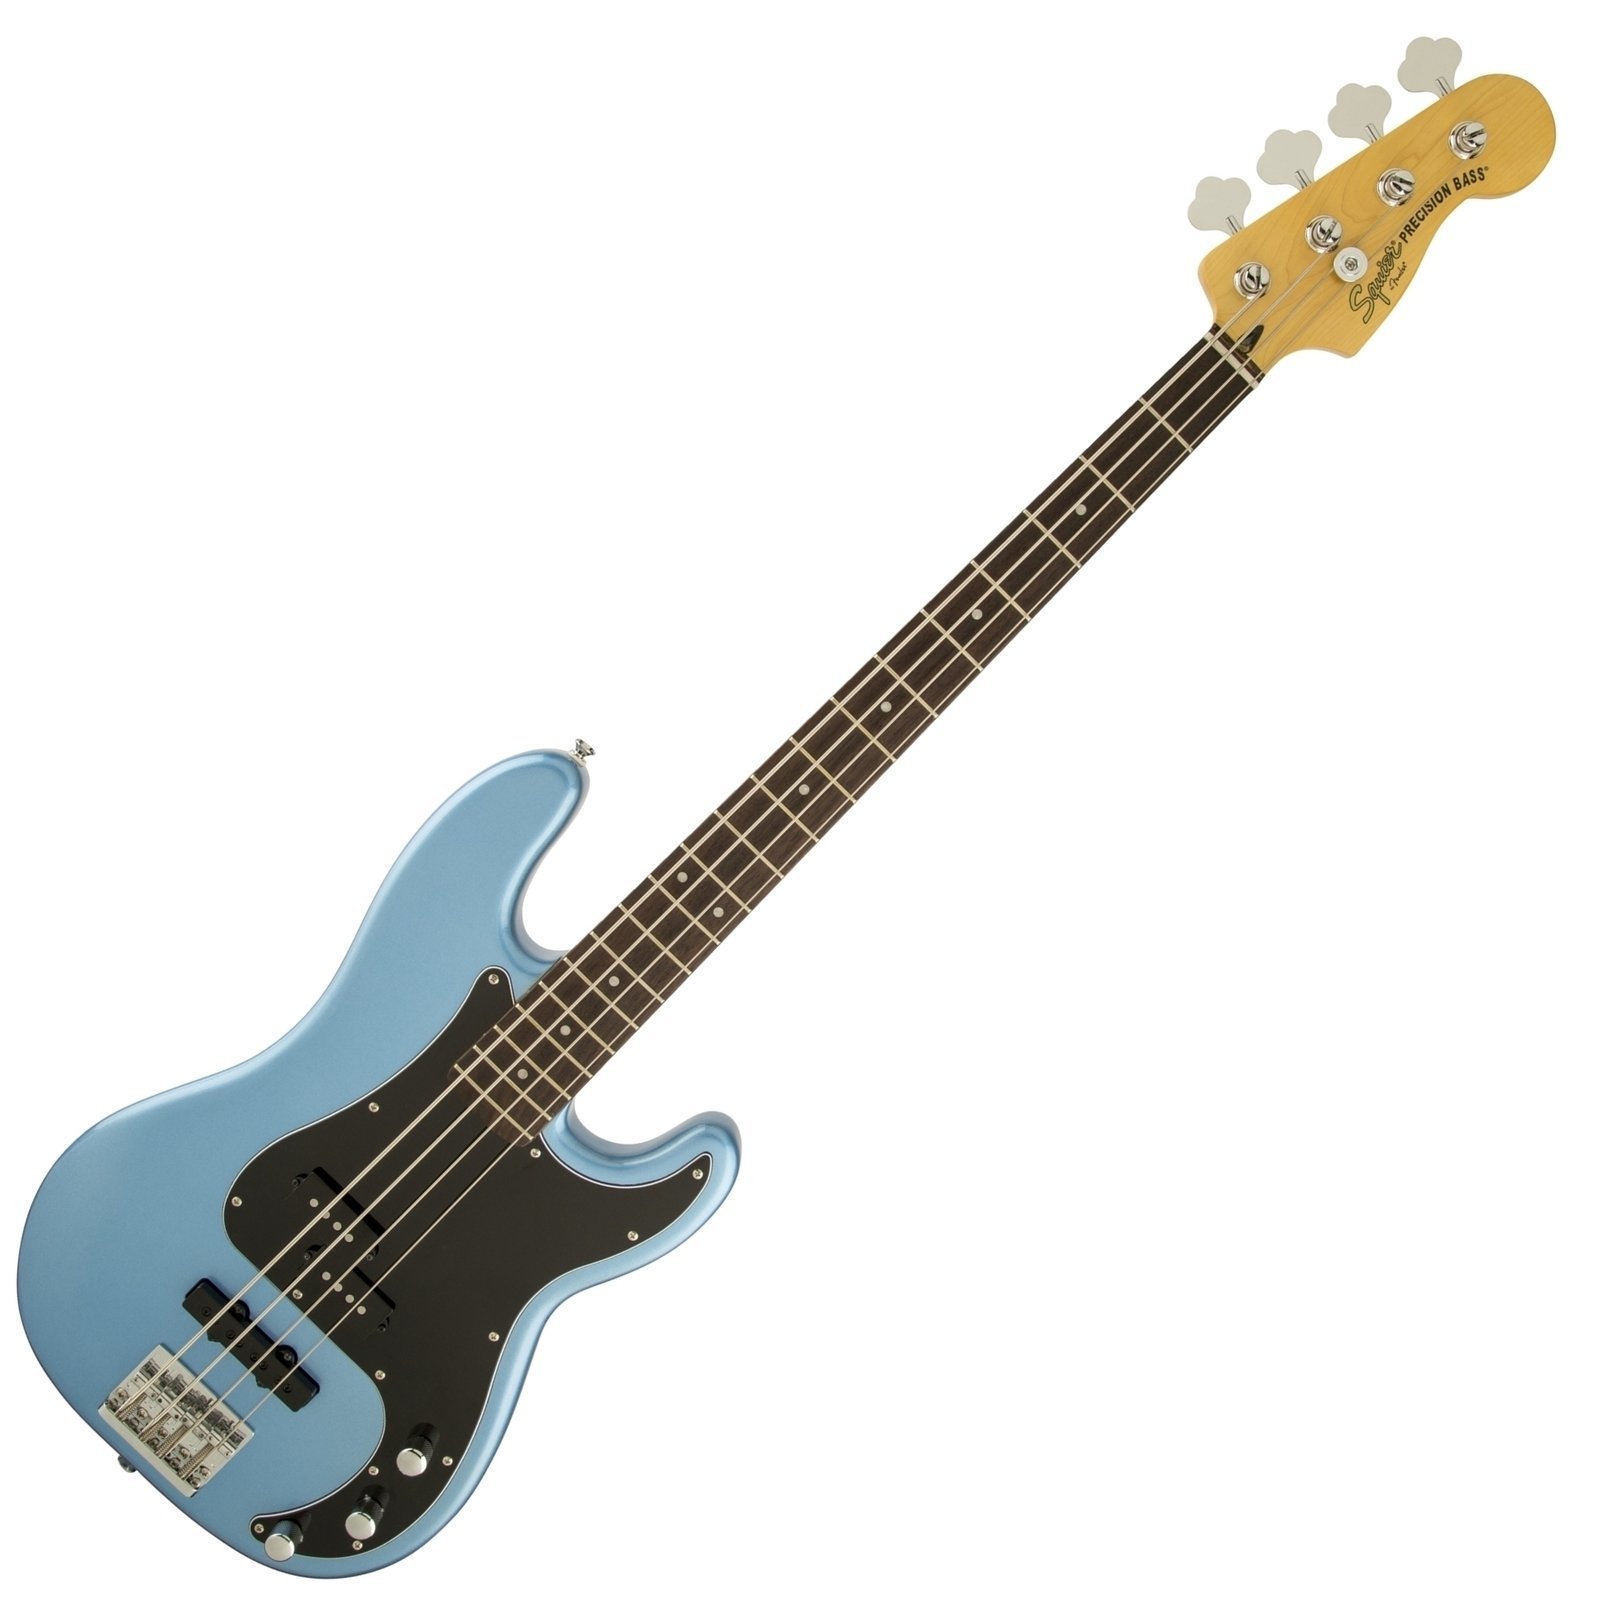 Baixo de 4 cordas Fender Squier Vintage Modified Precision Bass PJ IL Lake Placid Blue